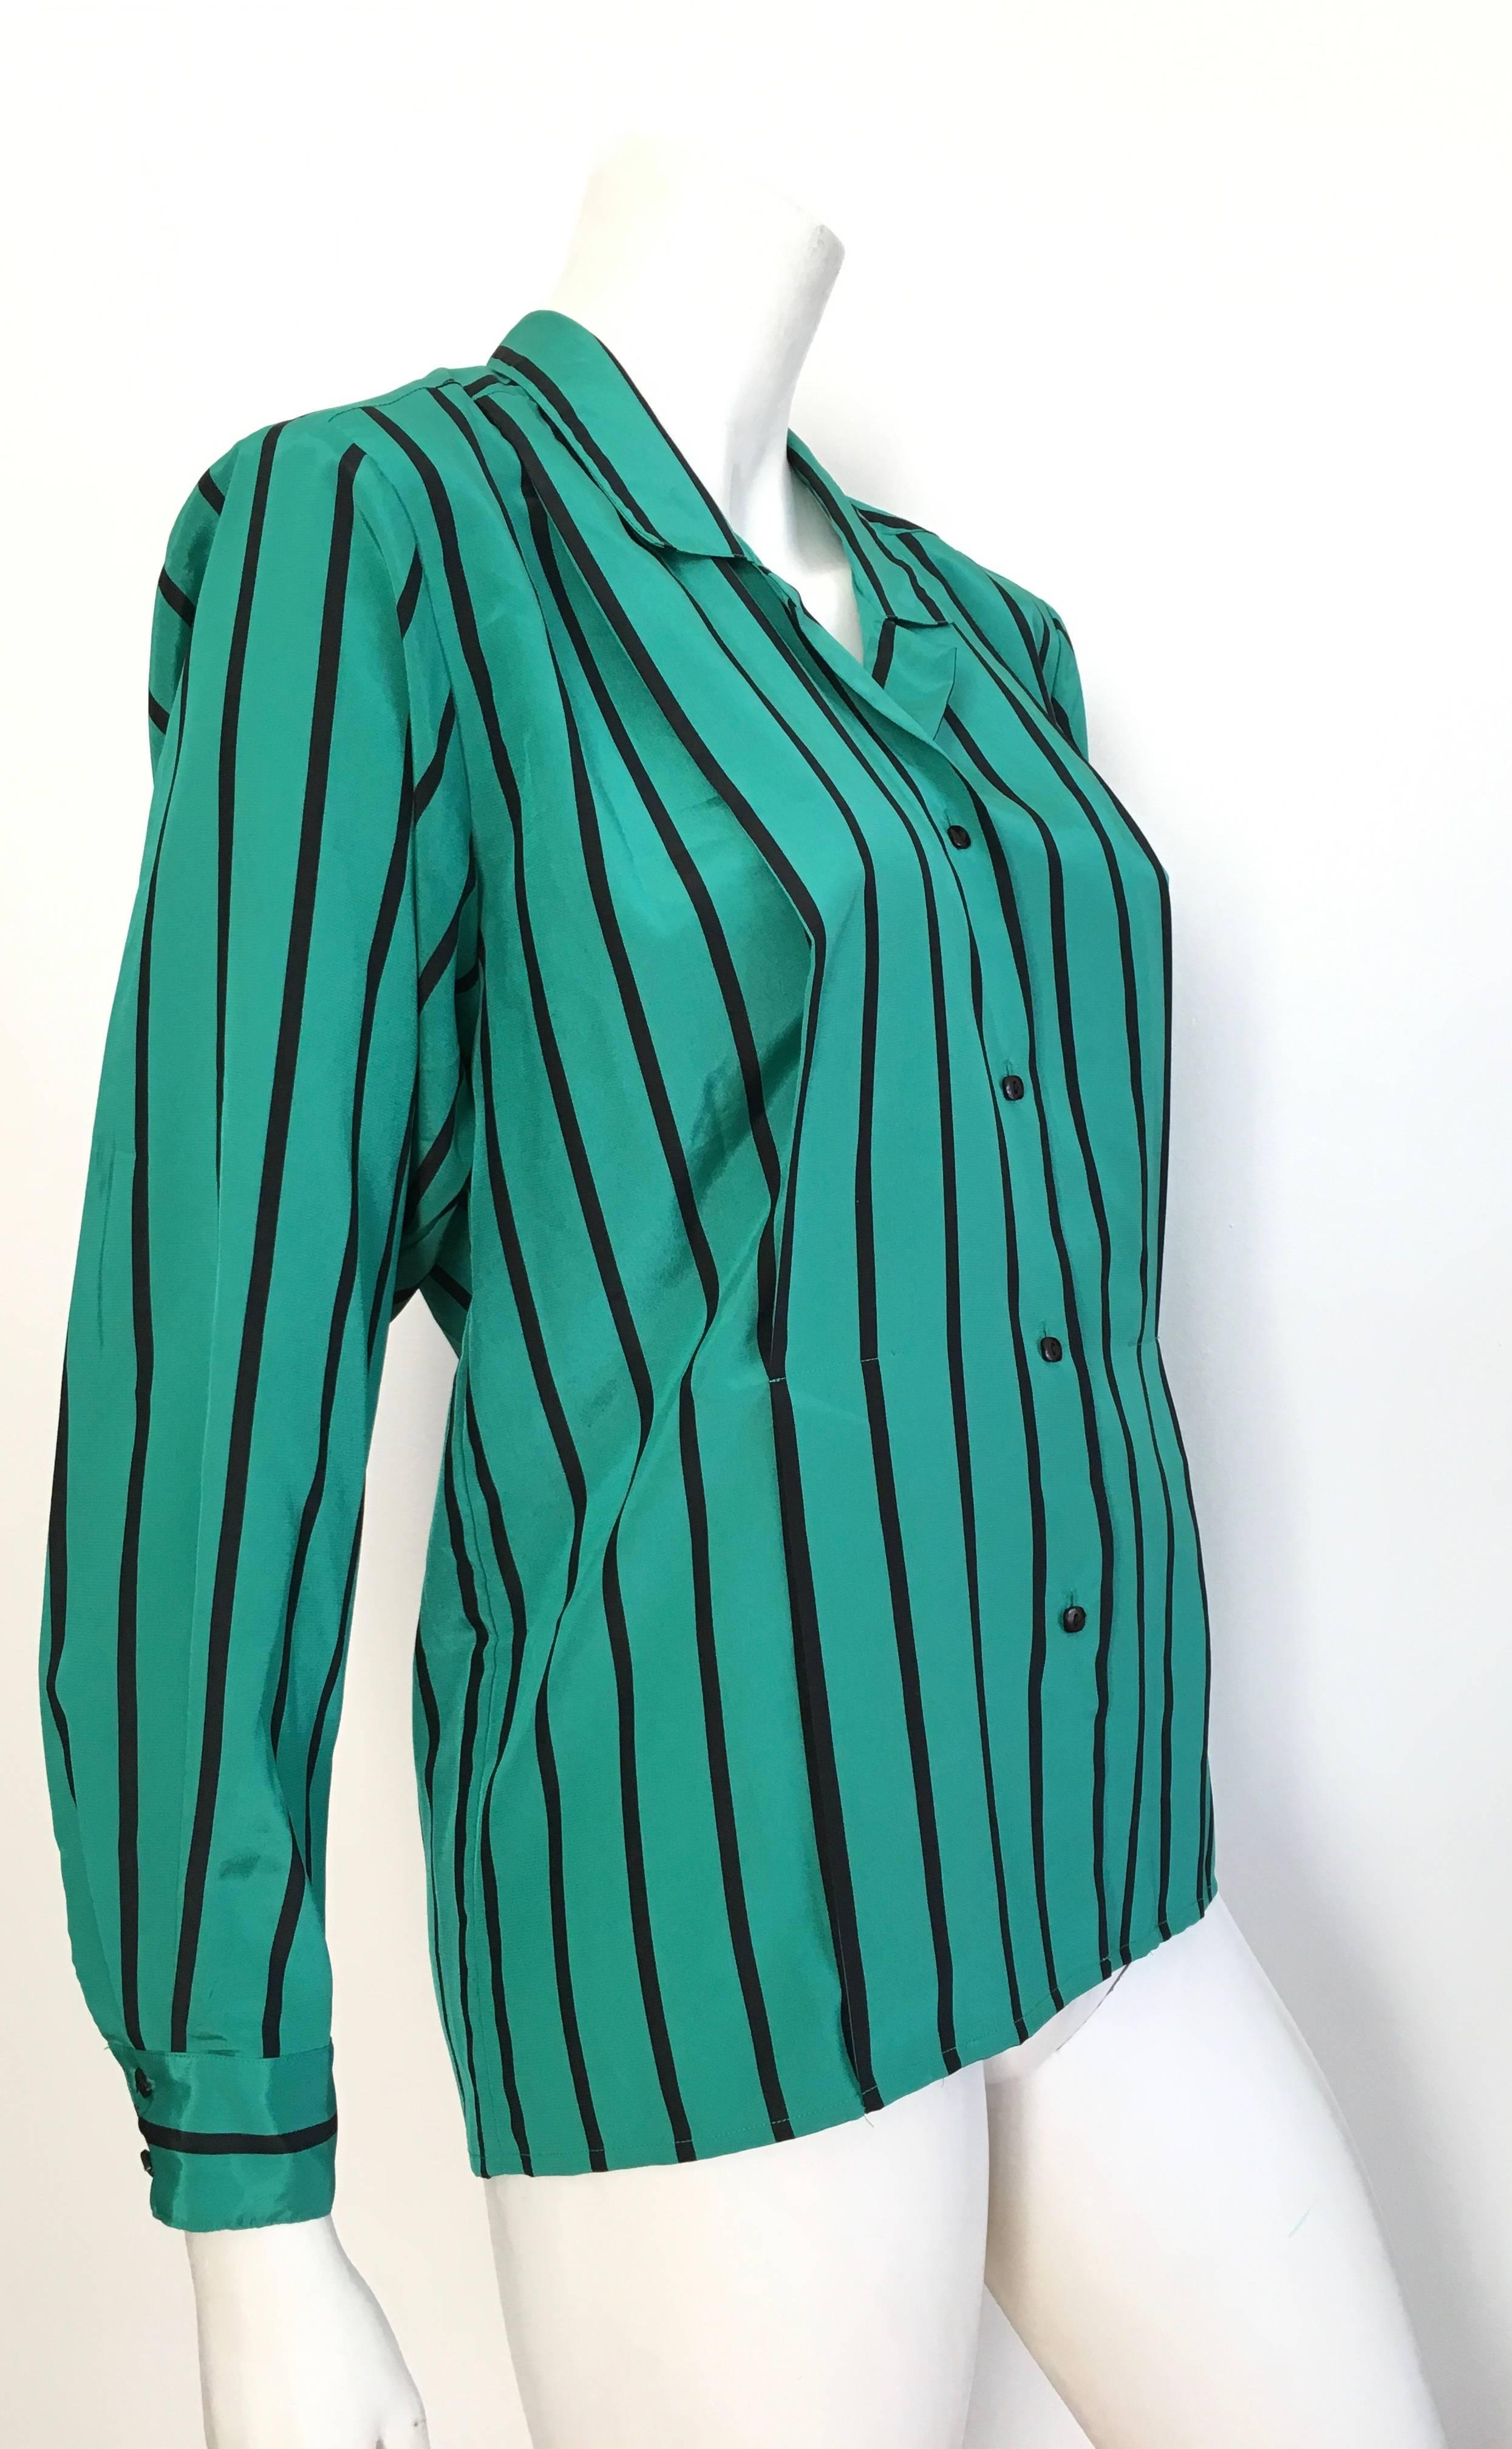 Blue Geoffrey Beene 1980s Striped Long Sleeve Blouse Size 6.